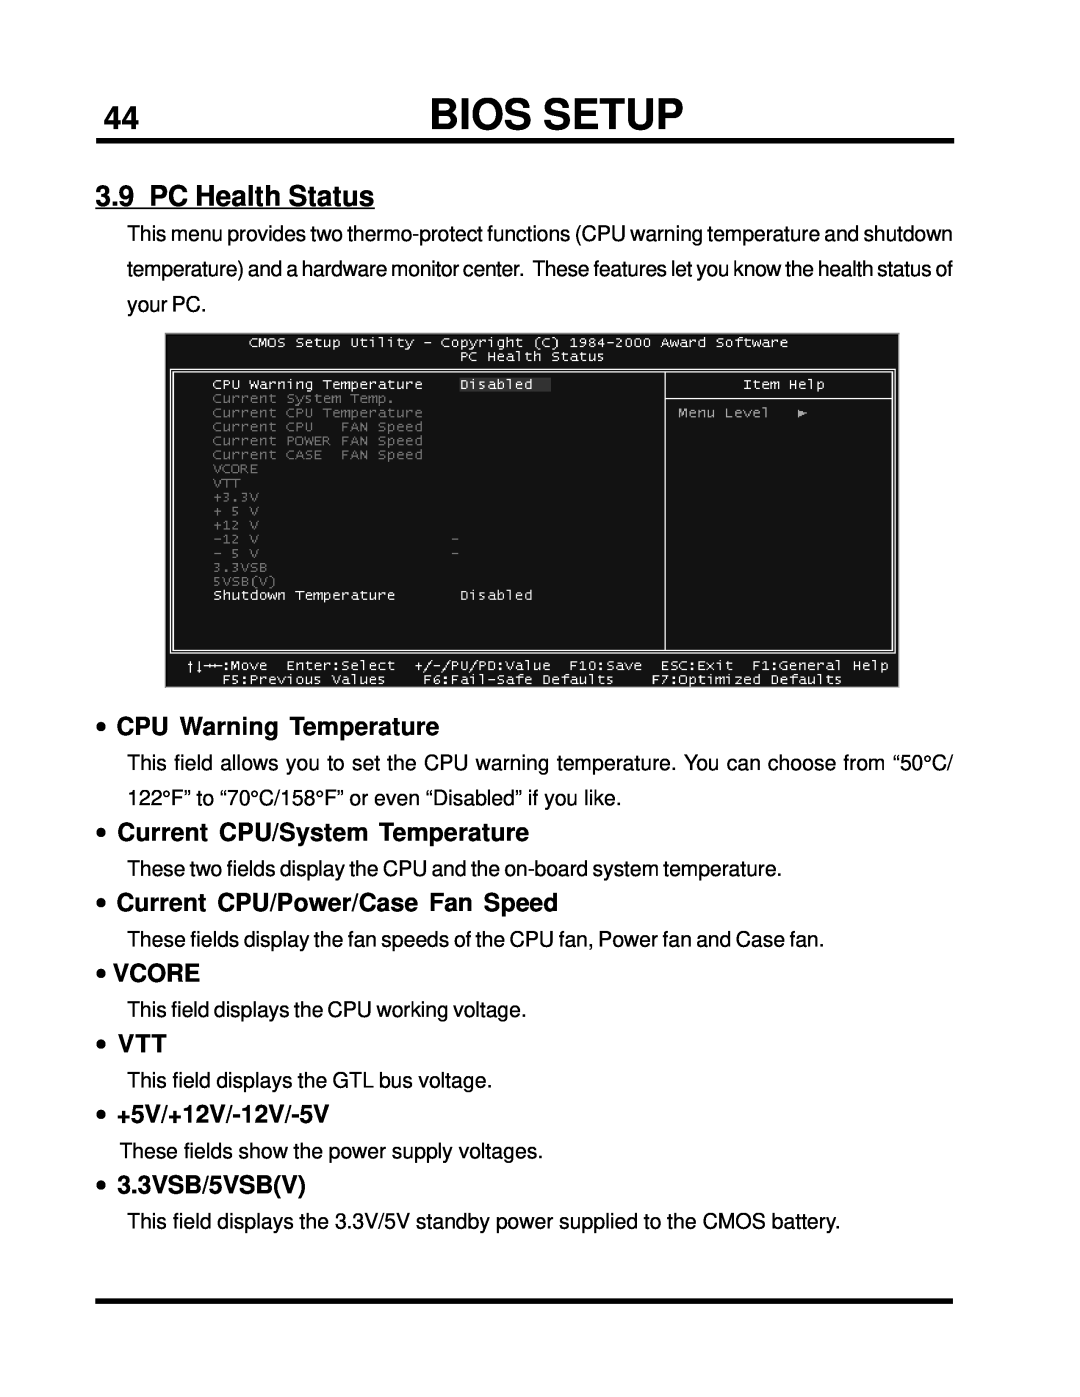 Intel TS-ASP3 PC Health Status, CPU Warning Temperature, •Current CPU/System Temperature, •Vcore, •Vtt, •+5V/+12V/-12V/-5V 